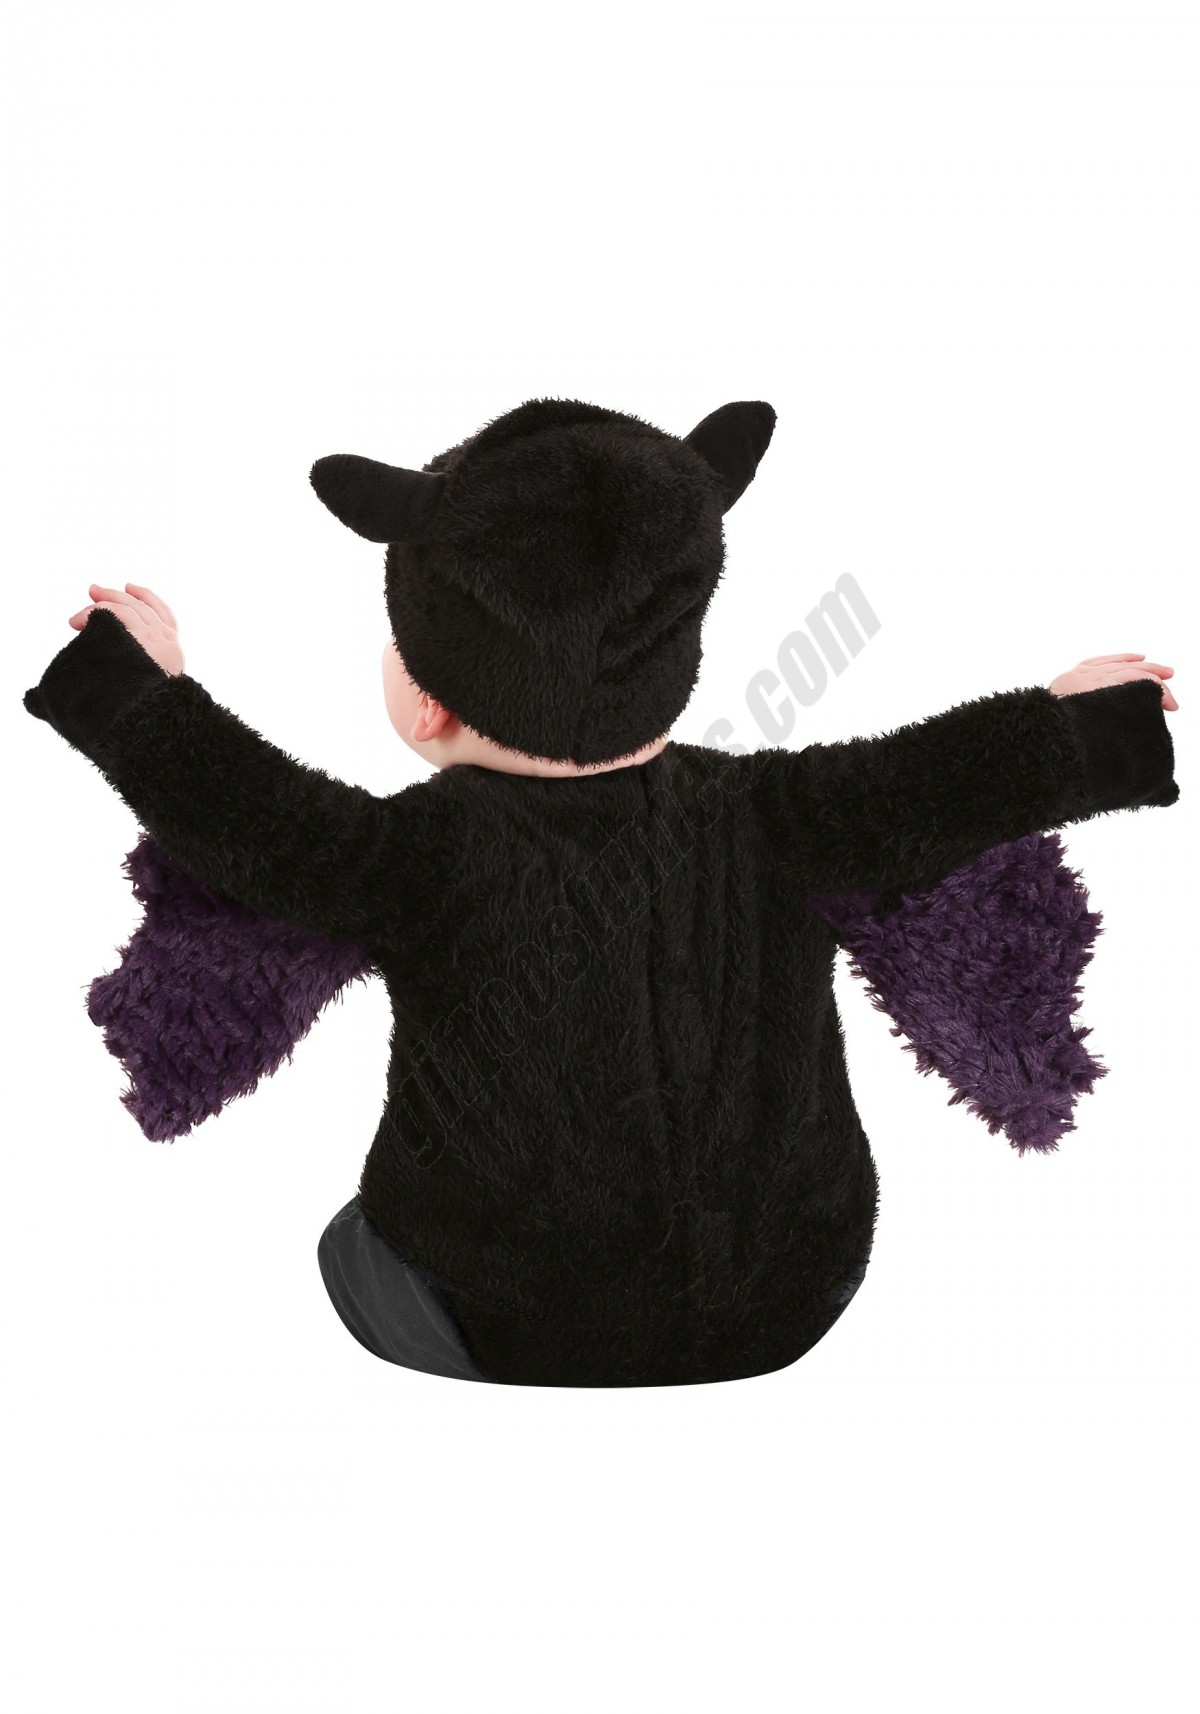 Blaine the Bat Infant Costume Promotions - -1